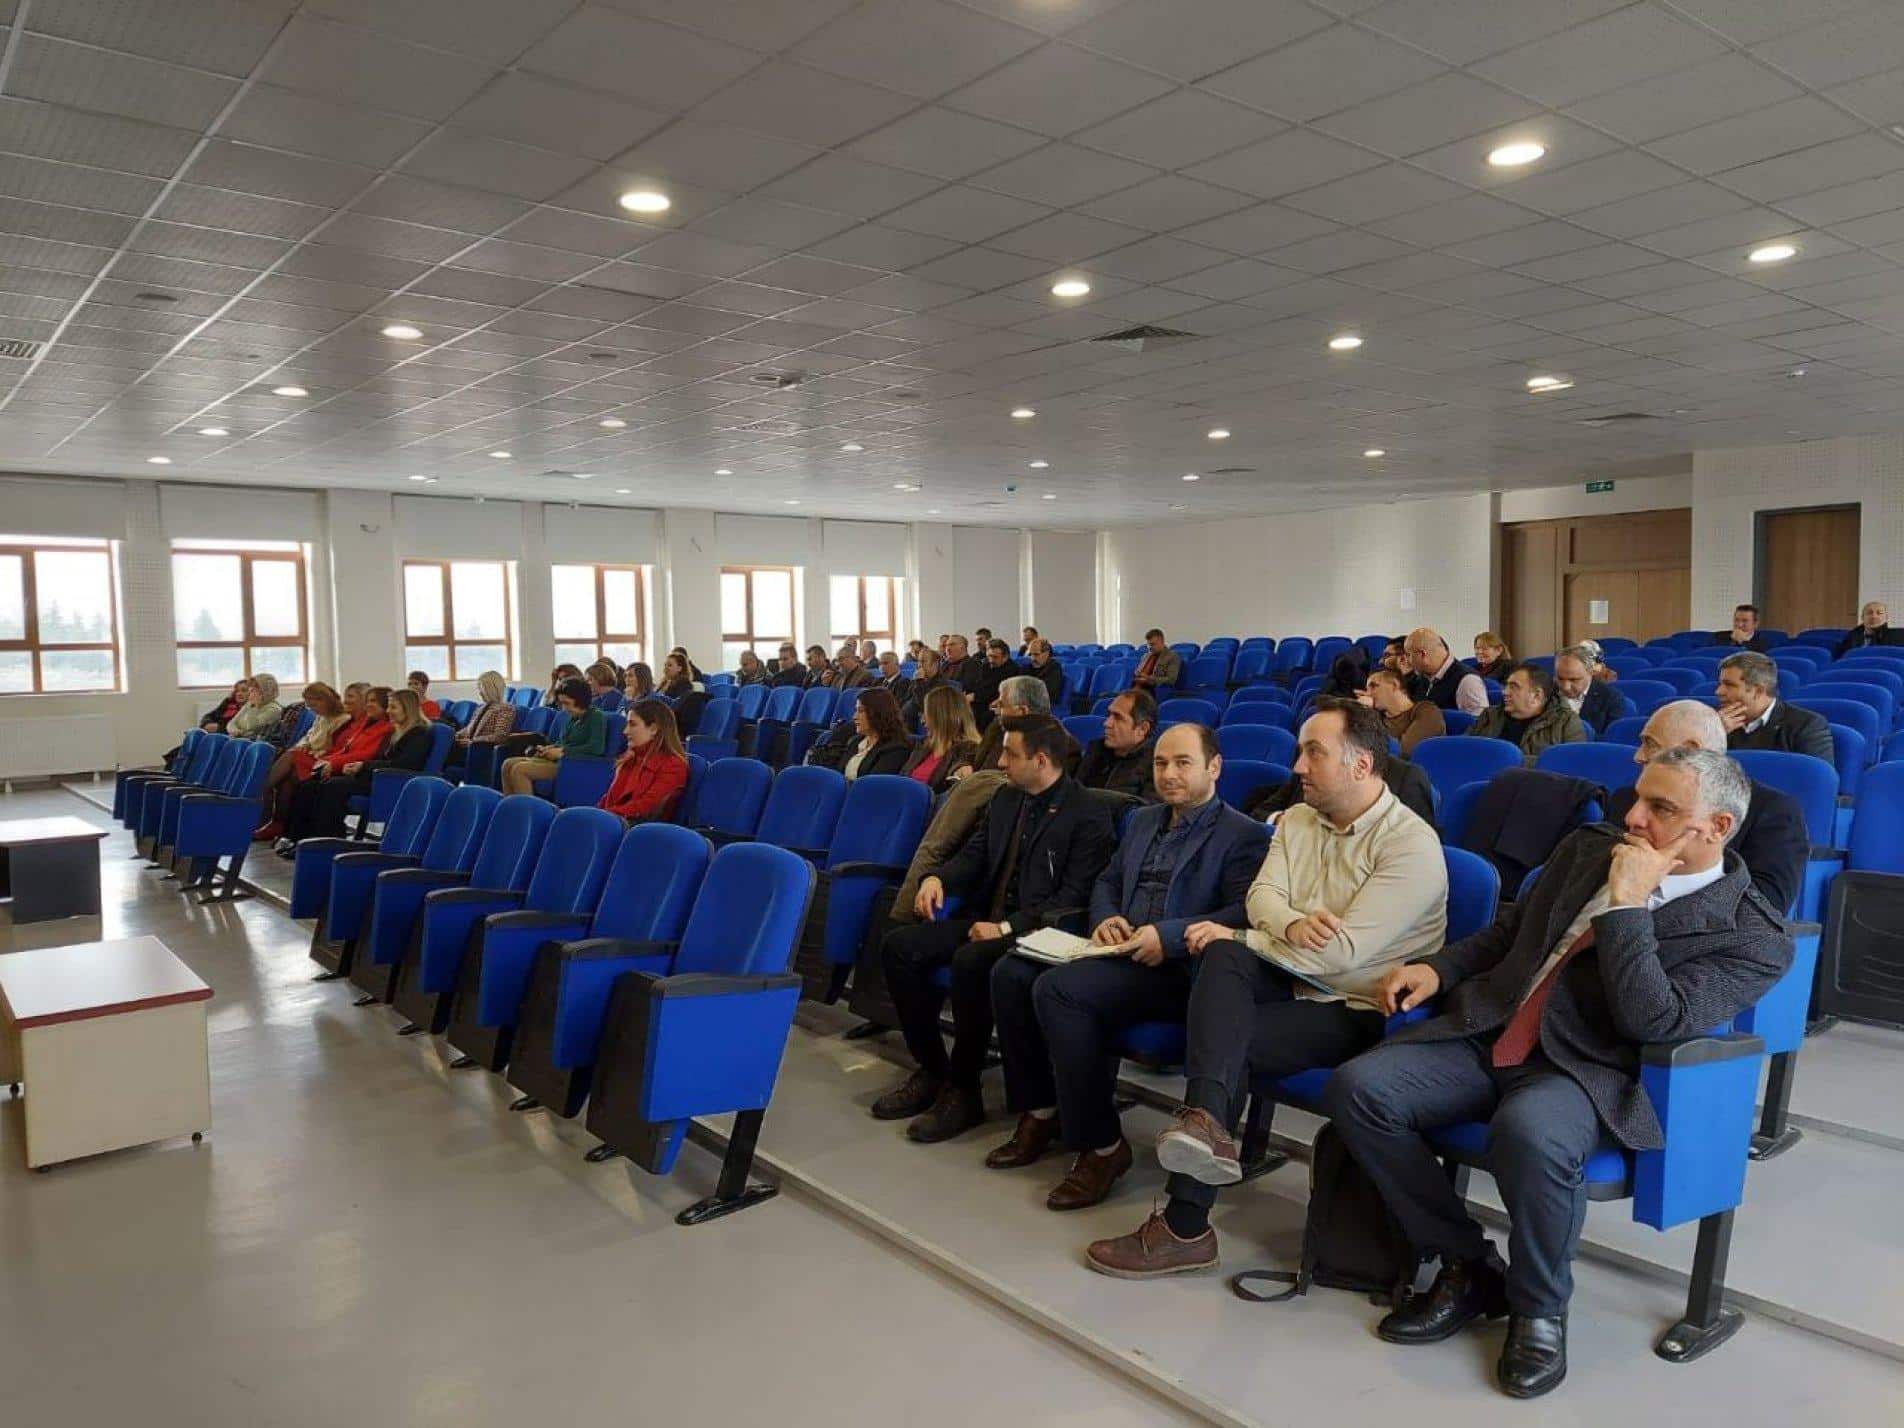 Polatlı İlçe Milli Eğitim Müdürlüğü'nden Önemli Toplantı (3)